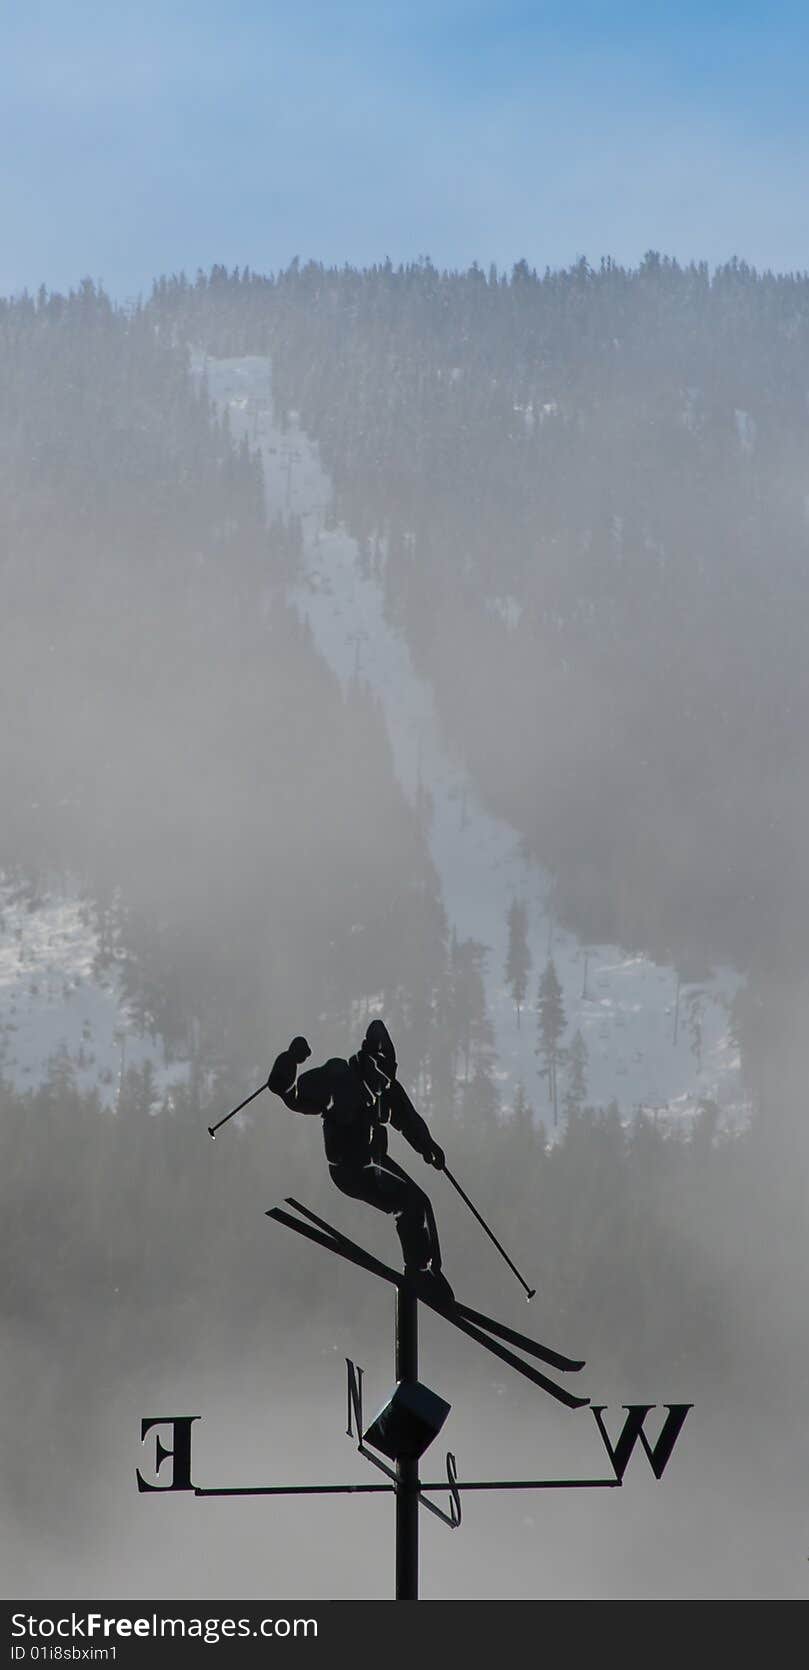 Skier Windvane taken at Whistler Blackcomb Resort